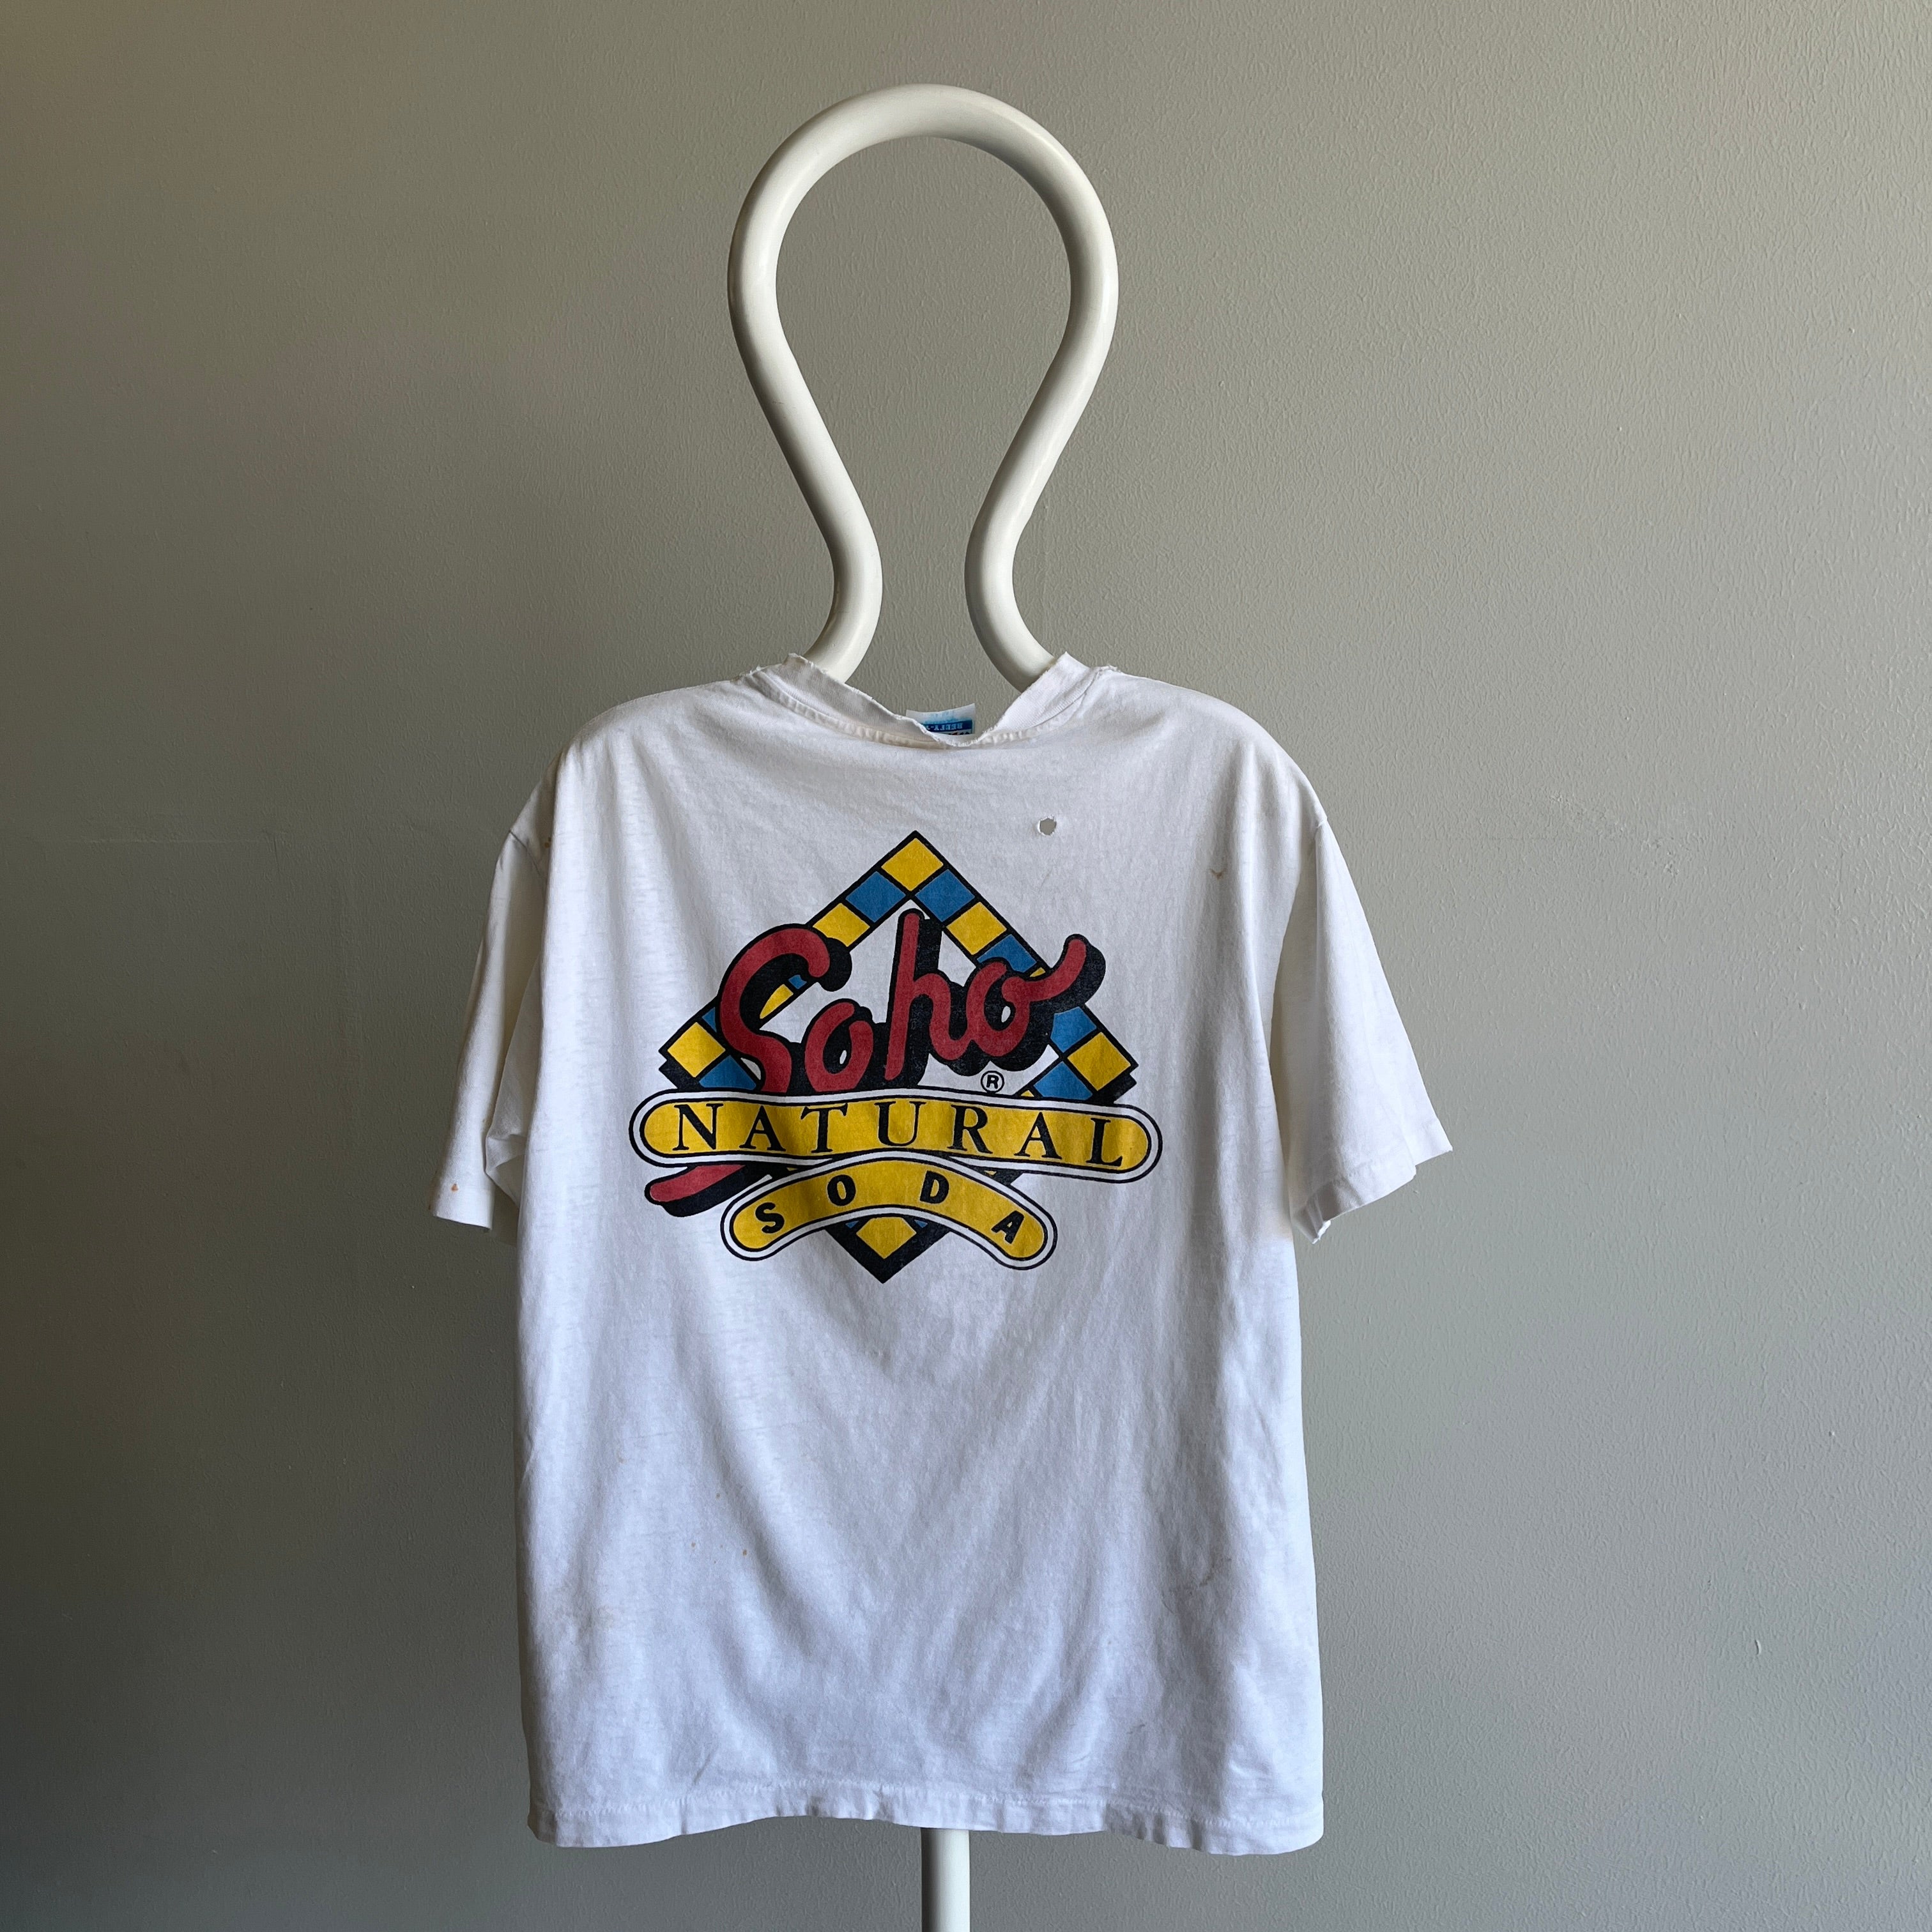 T-shirt avant et arrière Cruisin' w Soho Natural Soda des années 1980